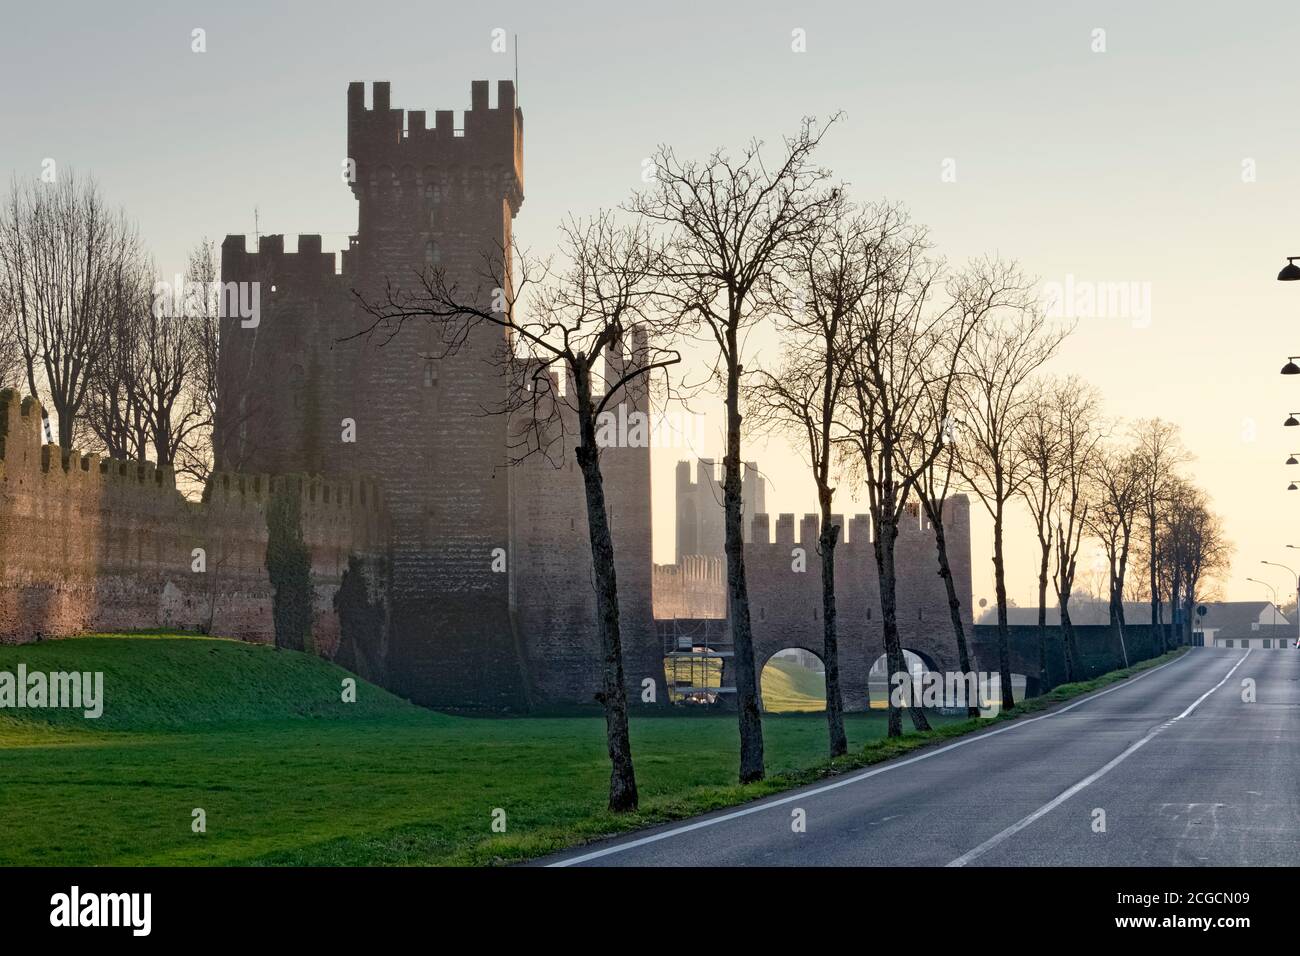 Rocca degli alberi a Montagnana: Fortezza medievale costruita dalla dinastia dei Carraresi. Provincia di Padova, Veneto, Italia, Europa. Foto Stock